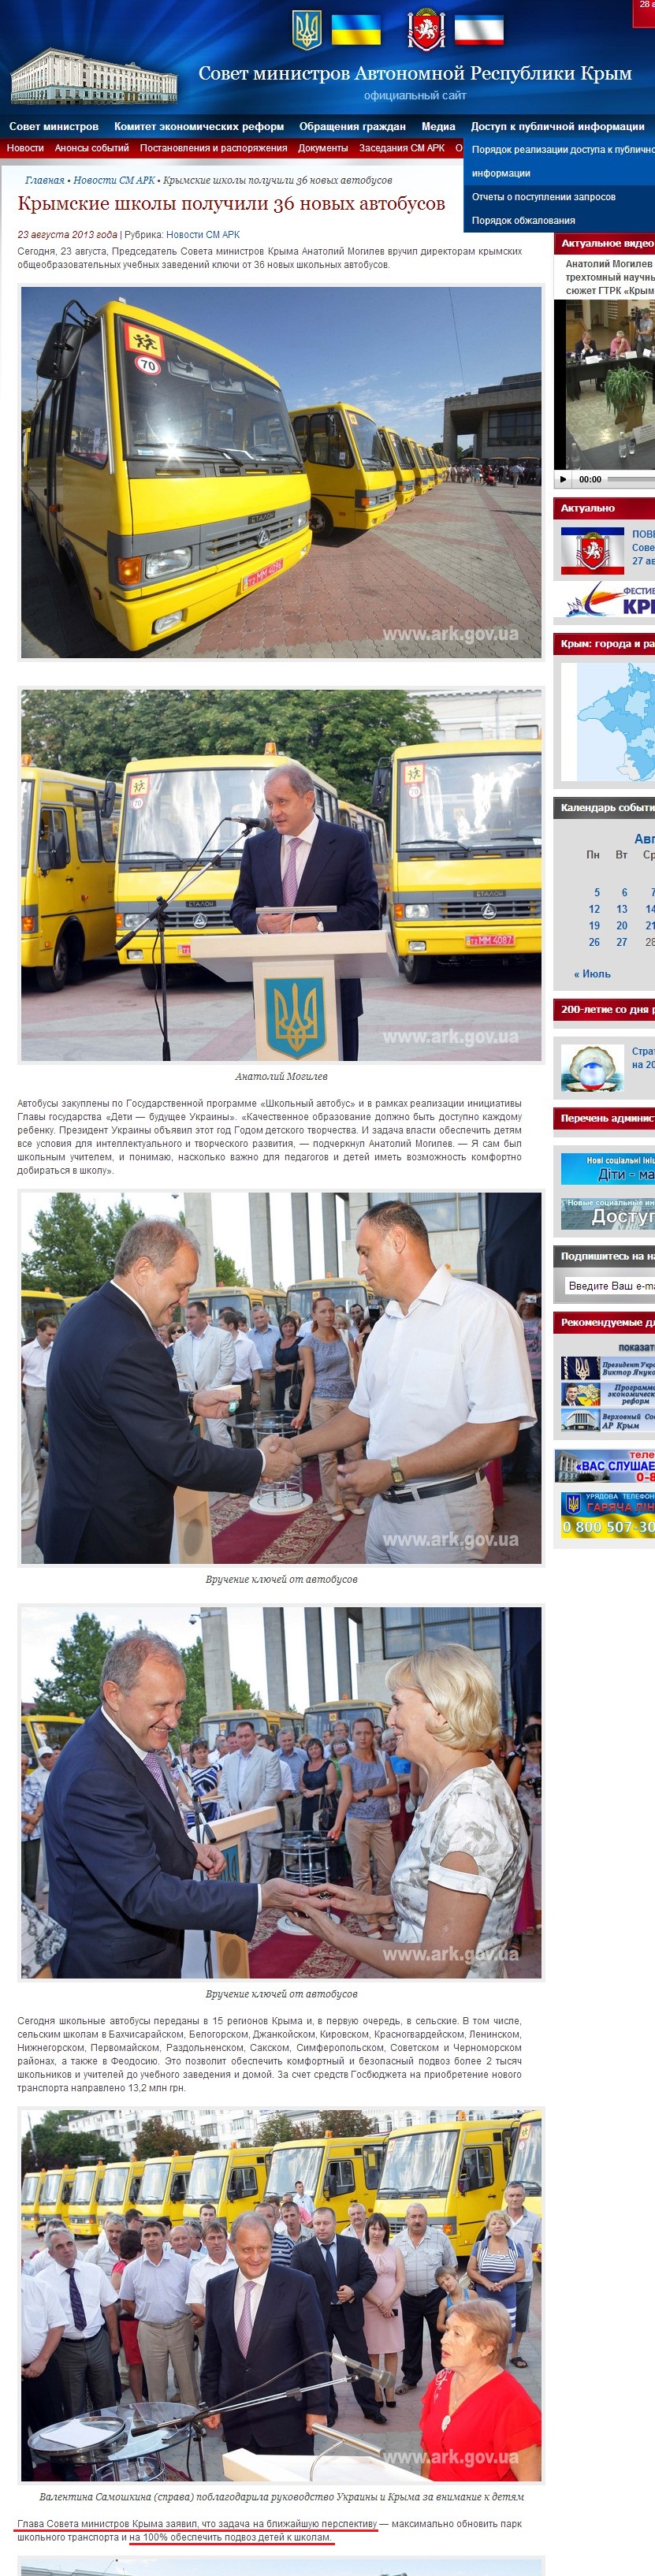 http://www.ark.gov.ua/blog/2013/08/23/krymskie-shkoly-poluchili-36-novyx-avtobusov/